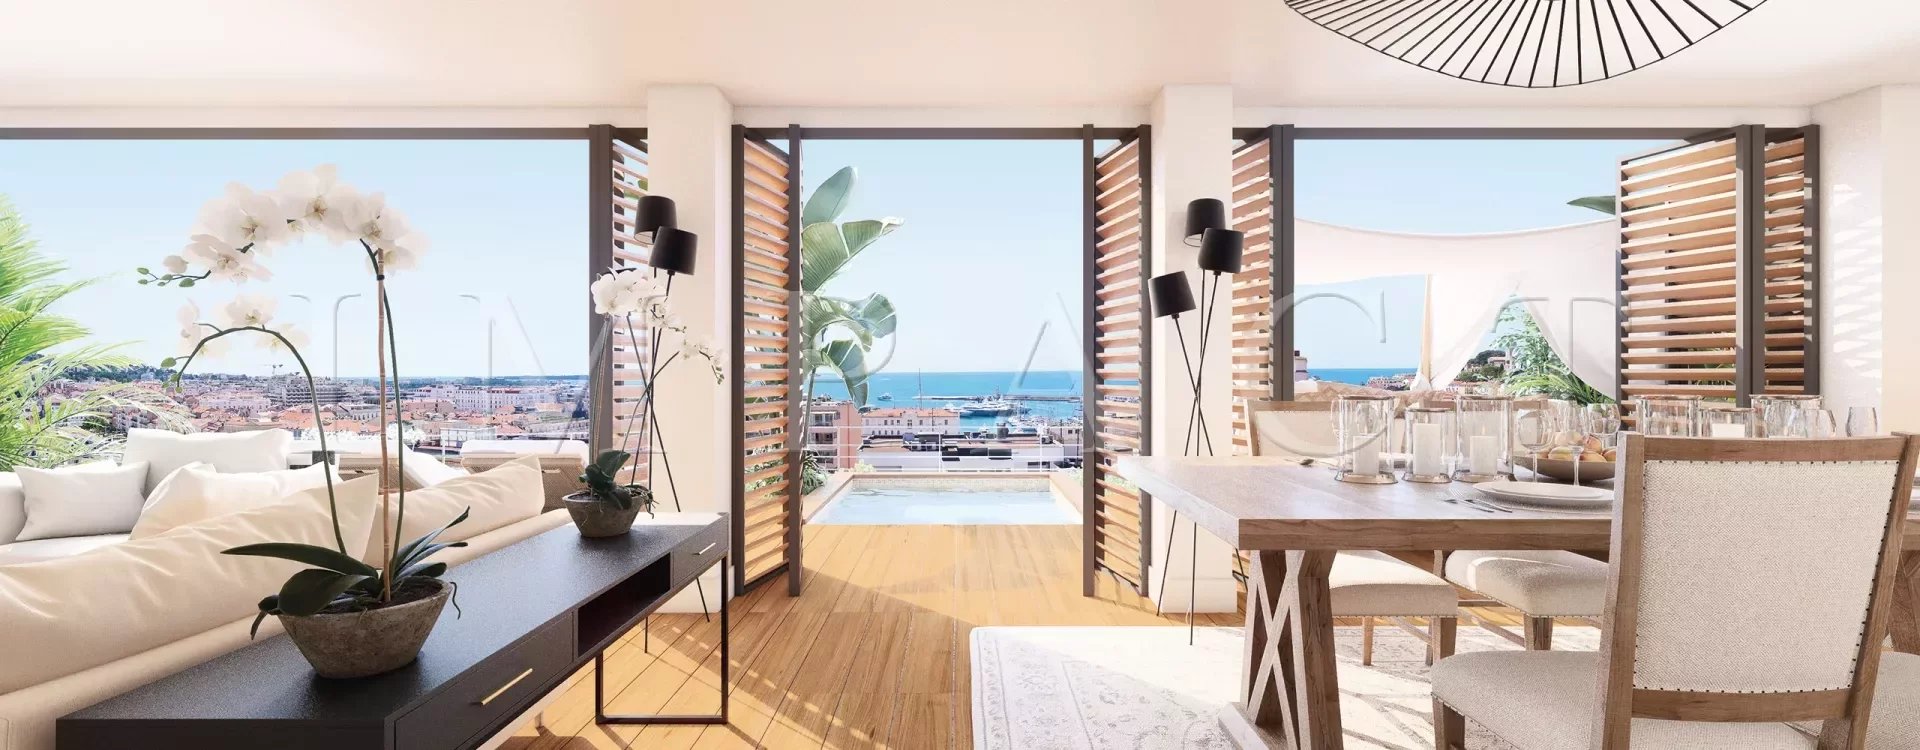 Vente Appartement 151m² 4 Pièces à Cannes (06400) - Agence Impact